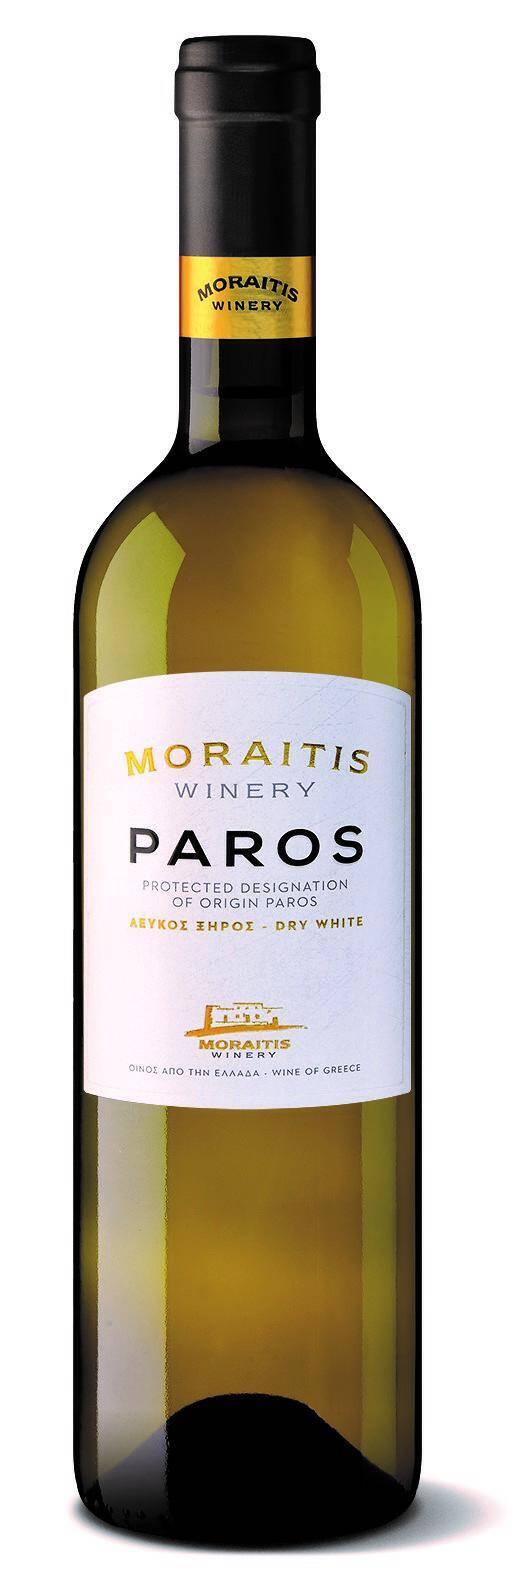 Moraitis White, PDO Paros BW GRE (Photo 1)